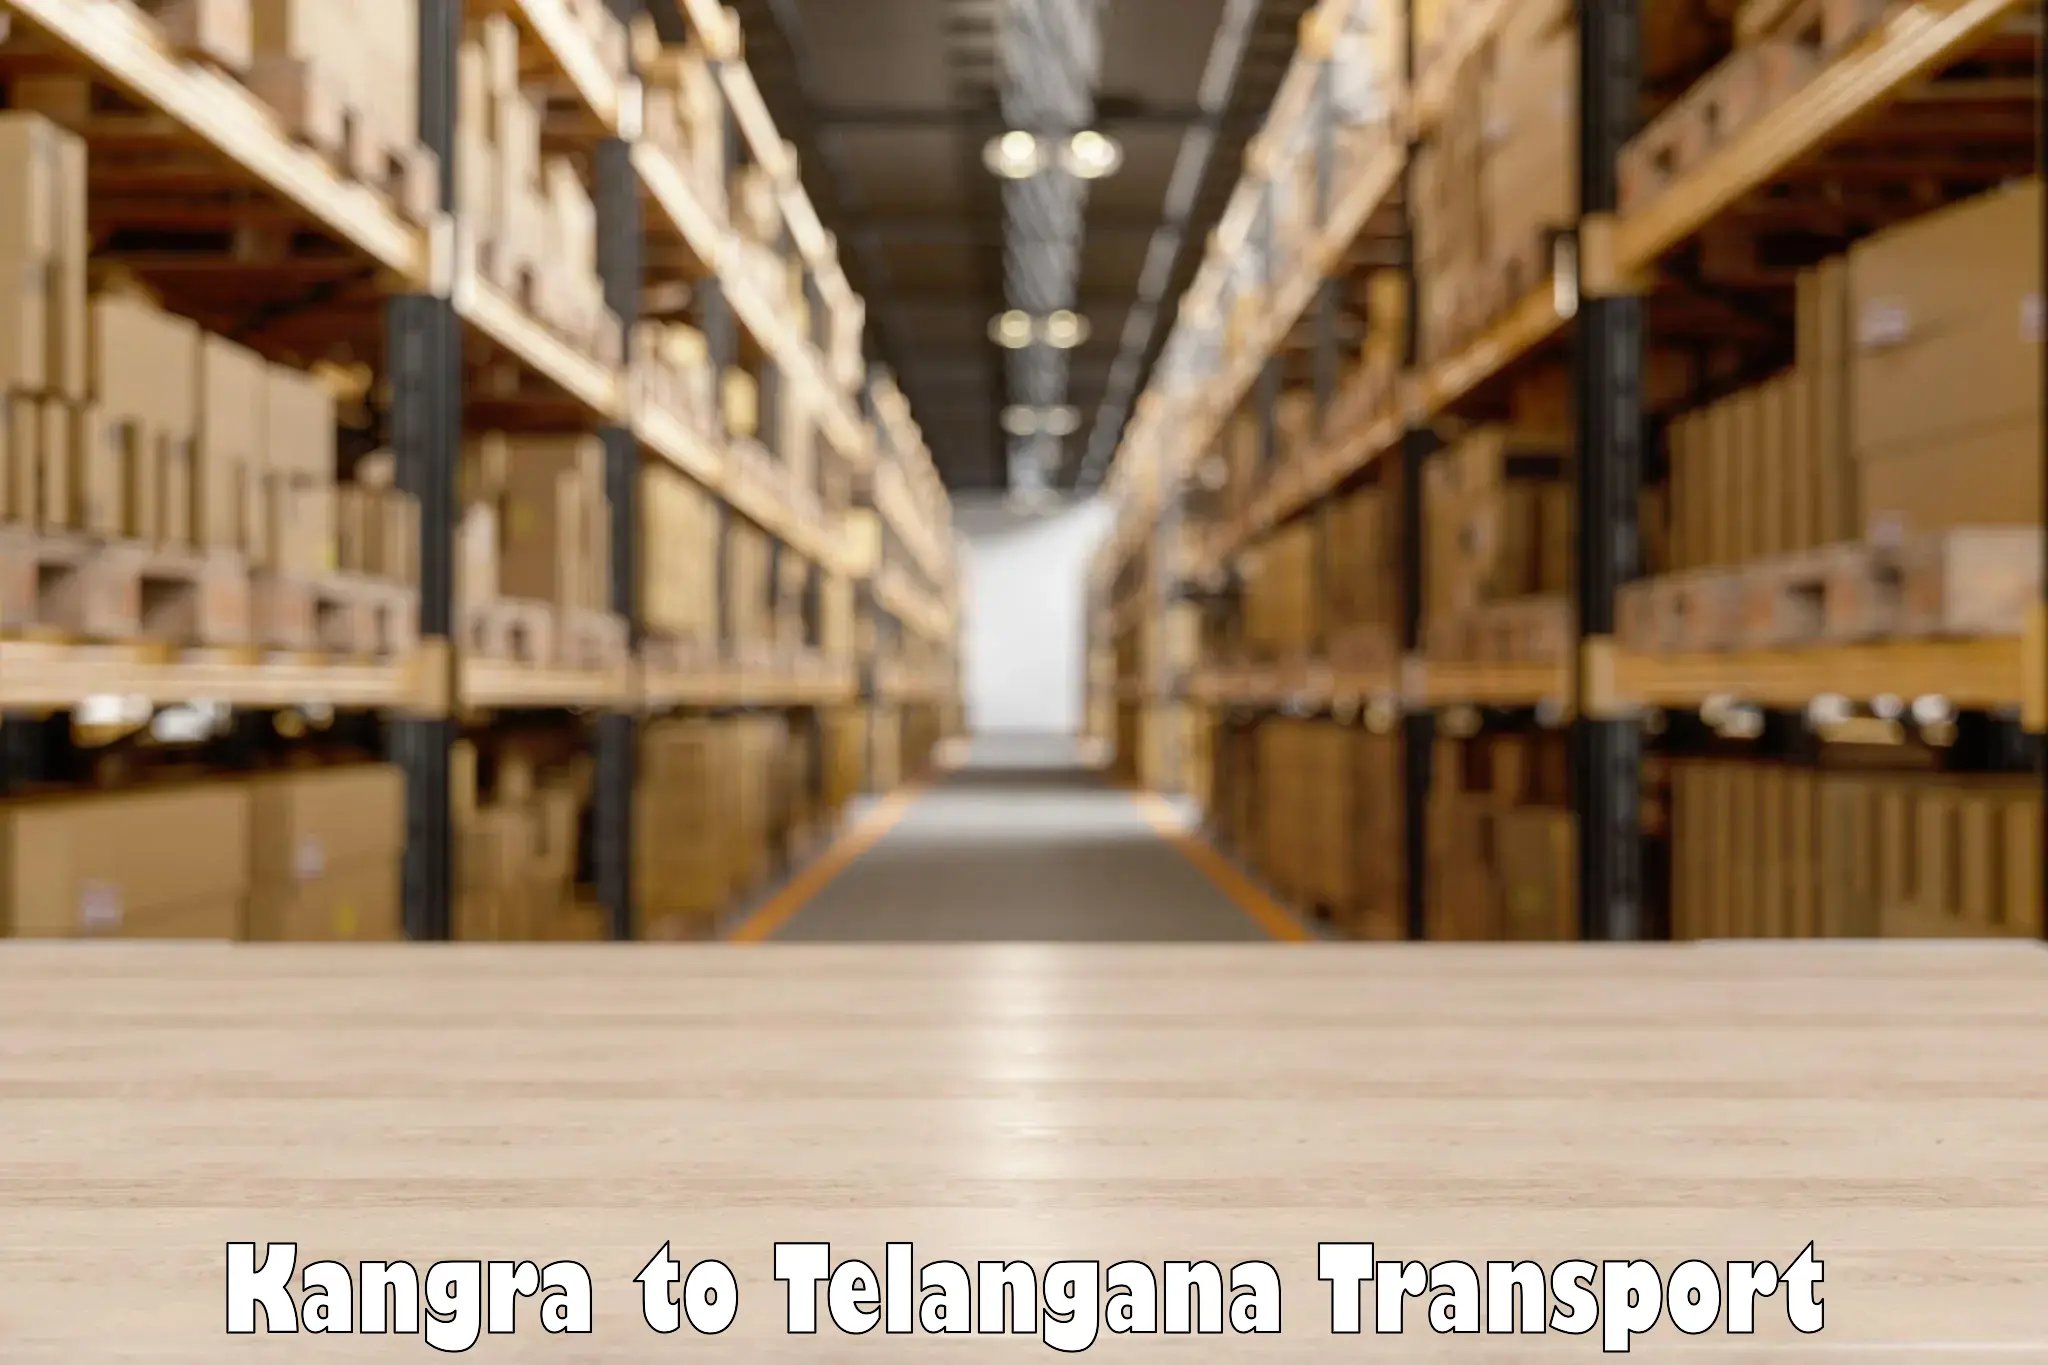 Online transport service Kangra to Jainad